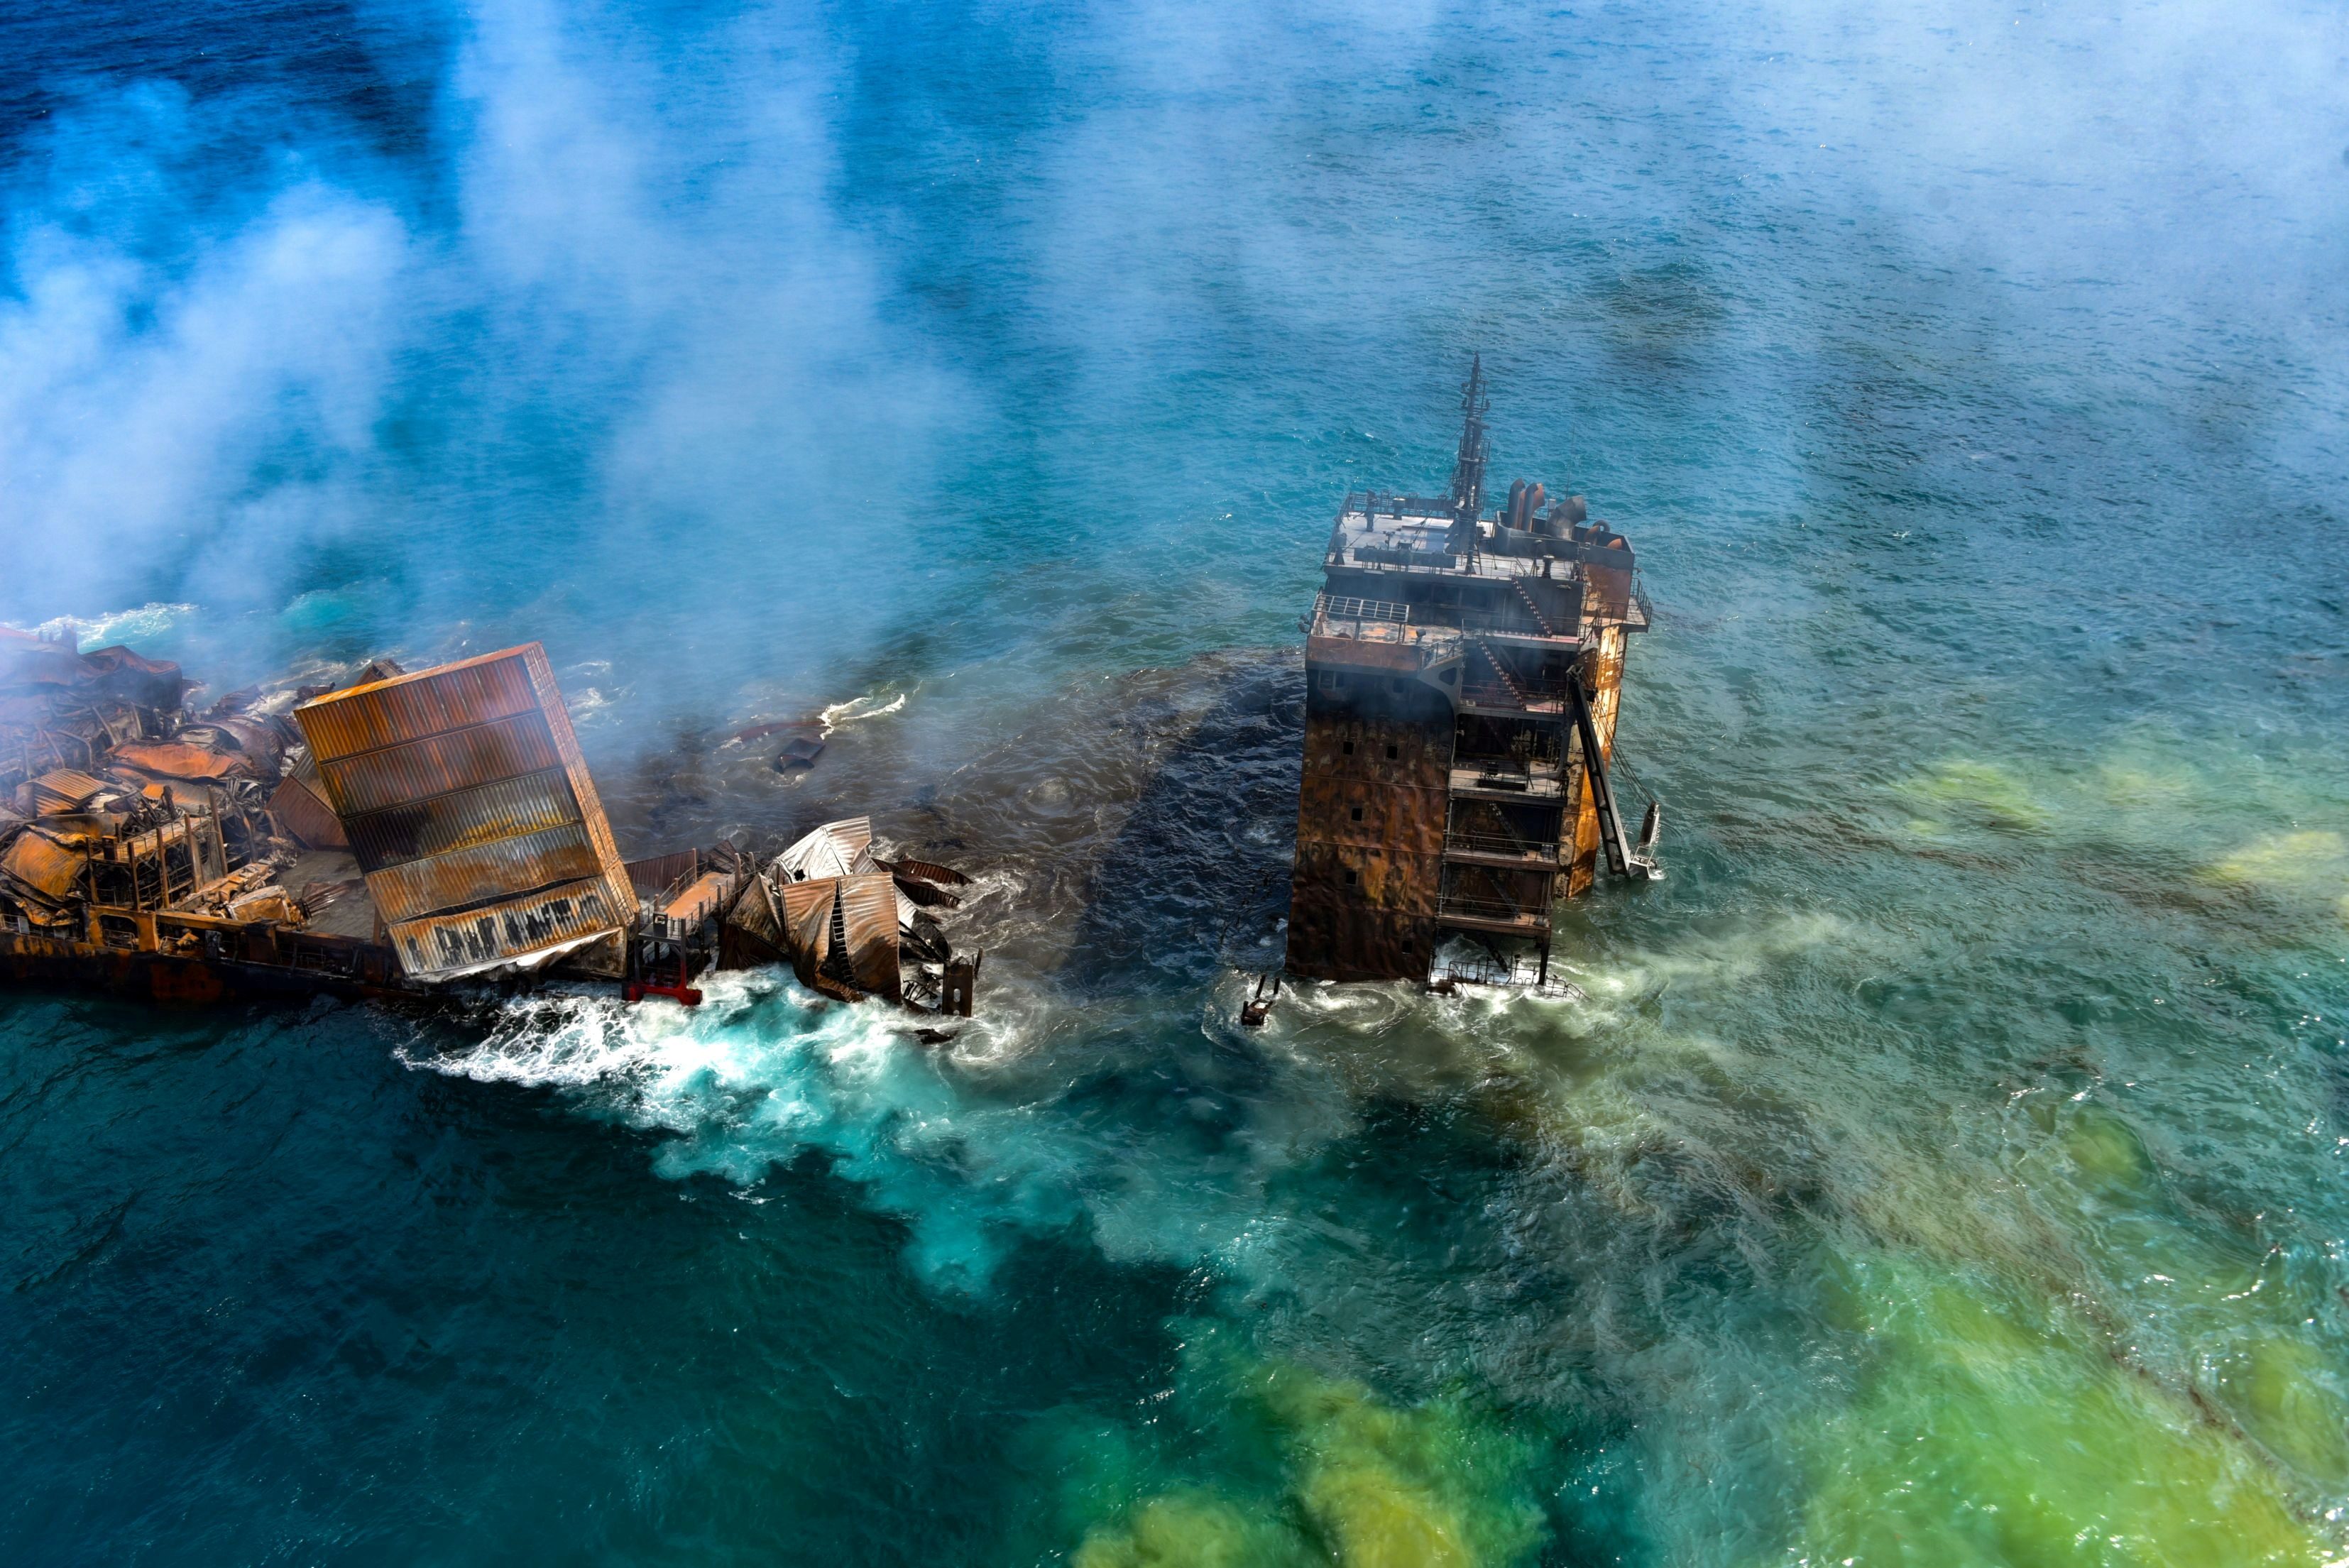 Sri Lanka readies for oil spill from sunken cargo ship